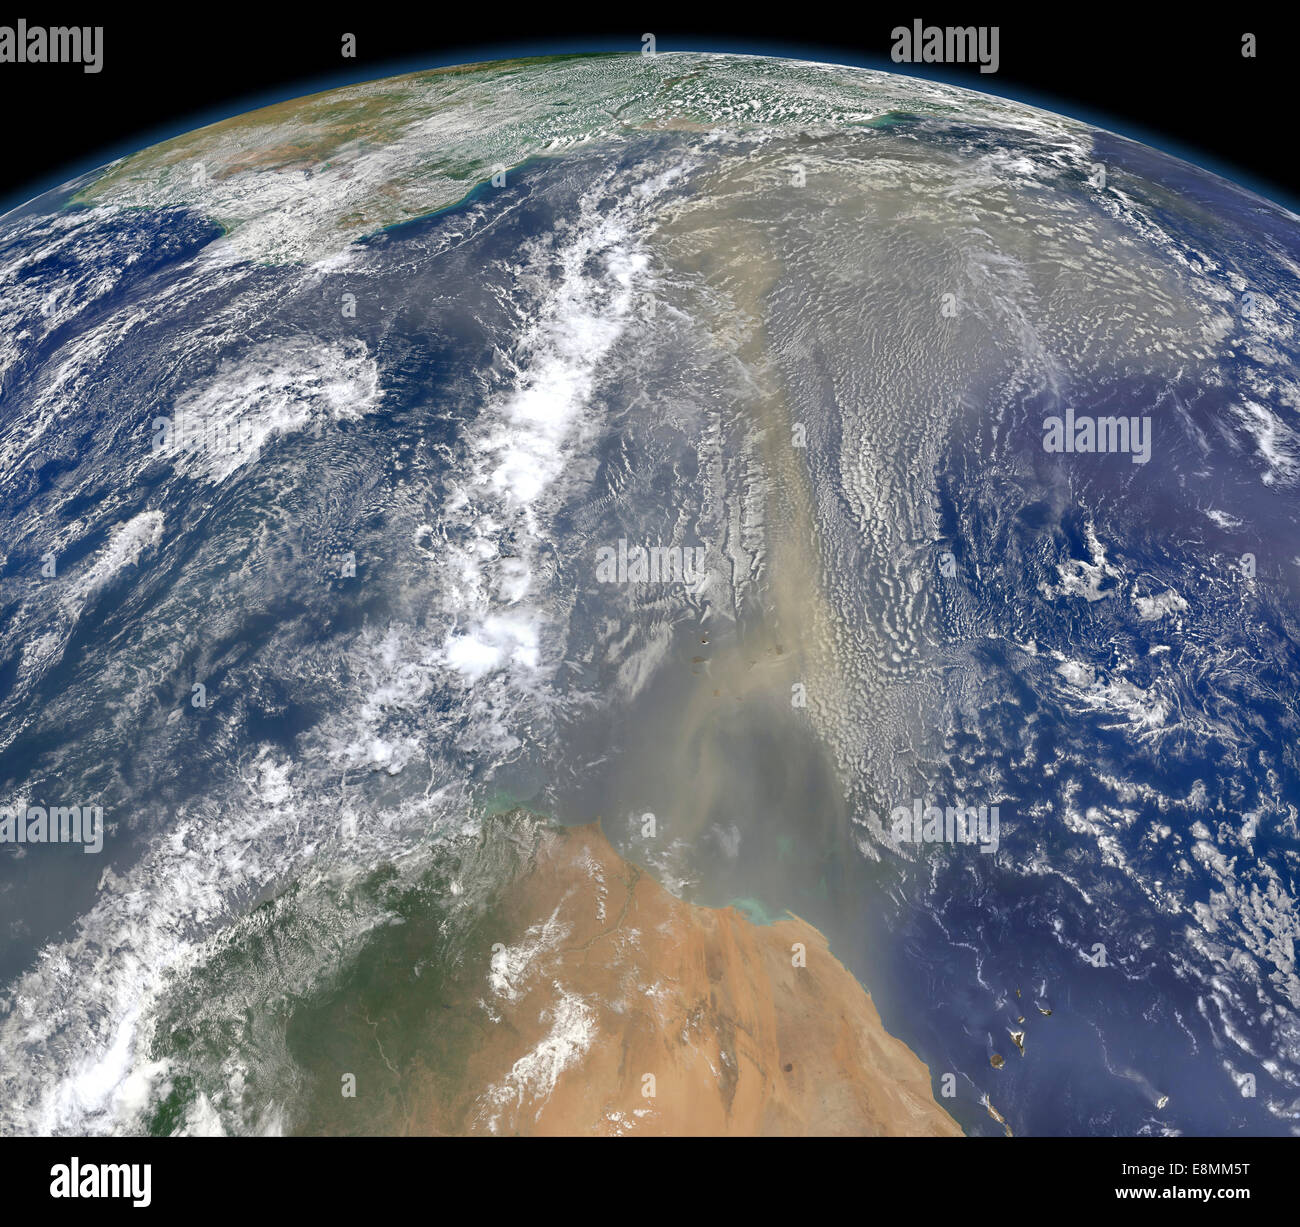 25 juin 2014 - poussières vers l'ouest en direction de l'Amérique du Sud et le golfe du Mexique. La poussière semble être de Mauritanie, streaming Banque D'Images